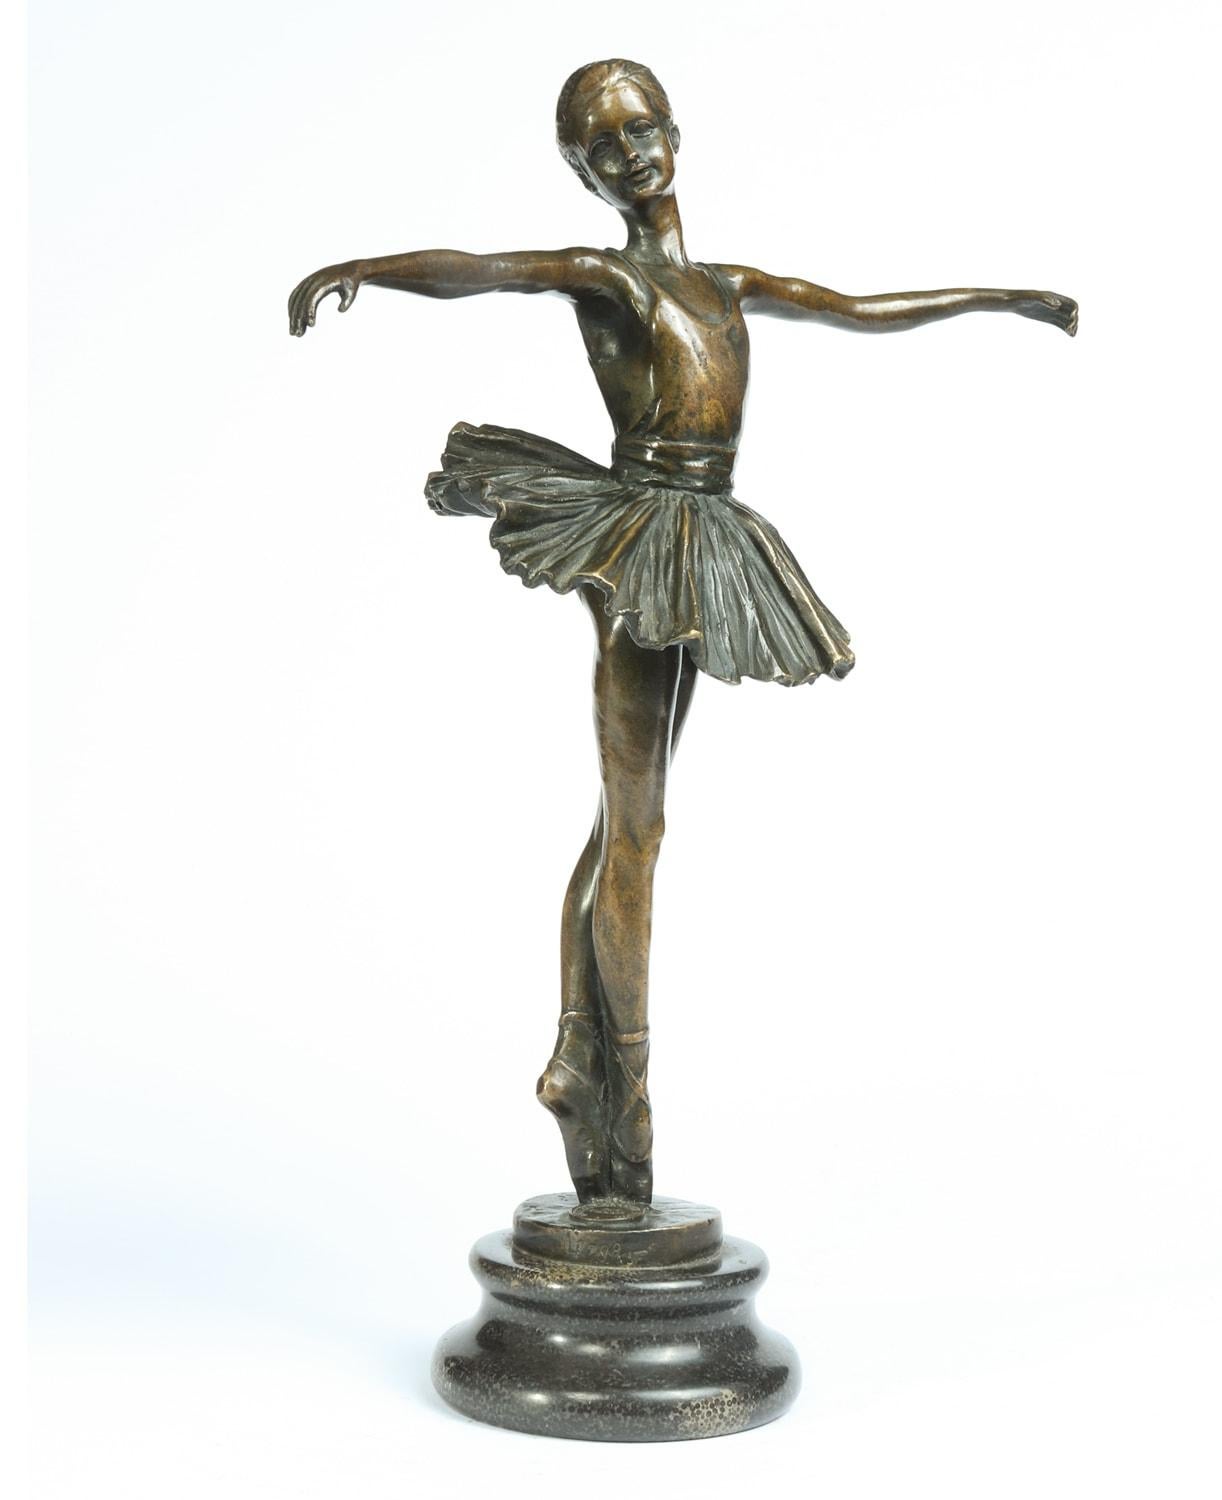 Ballerine en bronze par J B Deposee Garanti Paris circa 1910
Une belle ballerine en bronze coulée par JB Deposee Garante Paris en 1910, le bronze est en très bon état avec une grande patine.

Âge : 1910

Style : Sculpture en bronze

Matériau